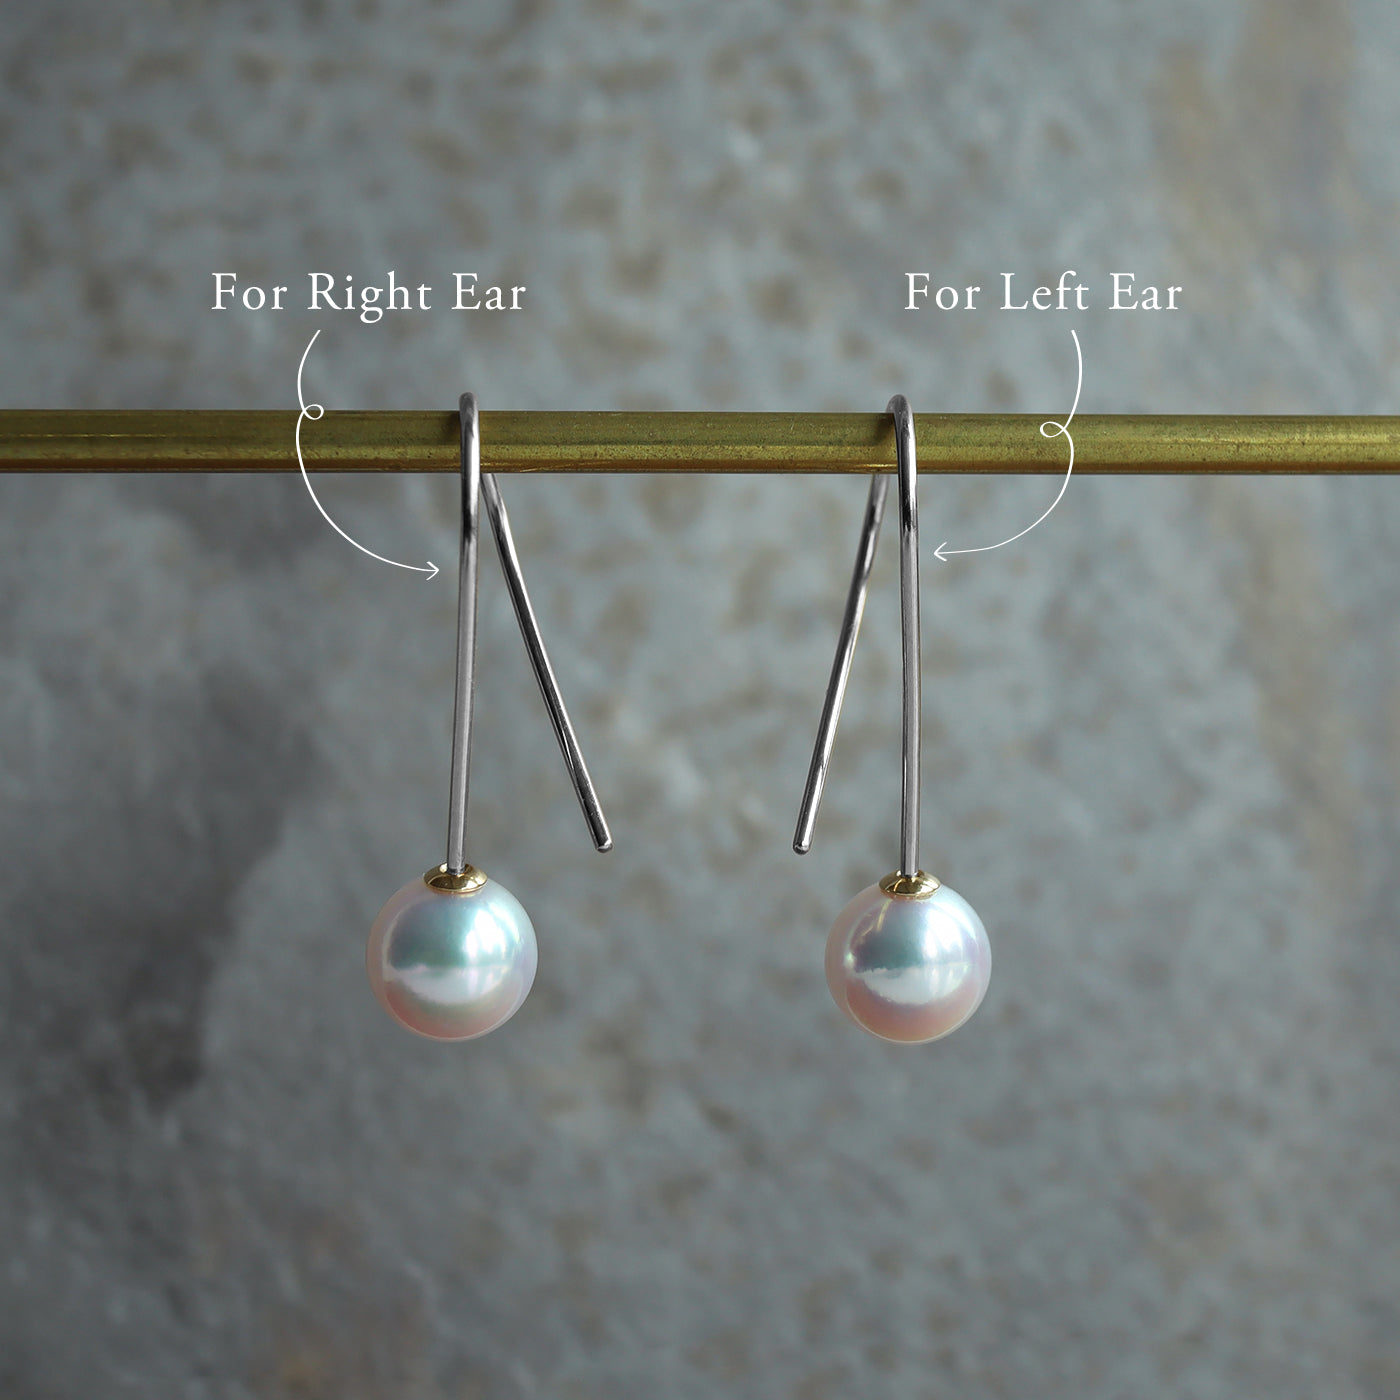 【BASE PARTS】Pt900 Twist Hook Pierced Earring - For Left